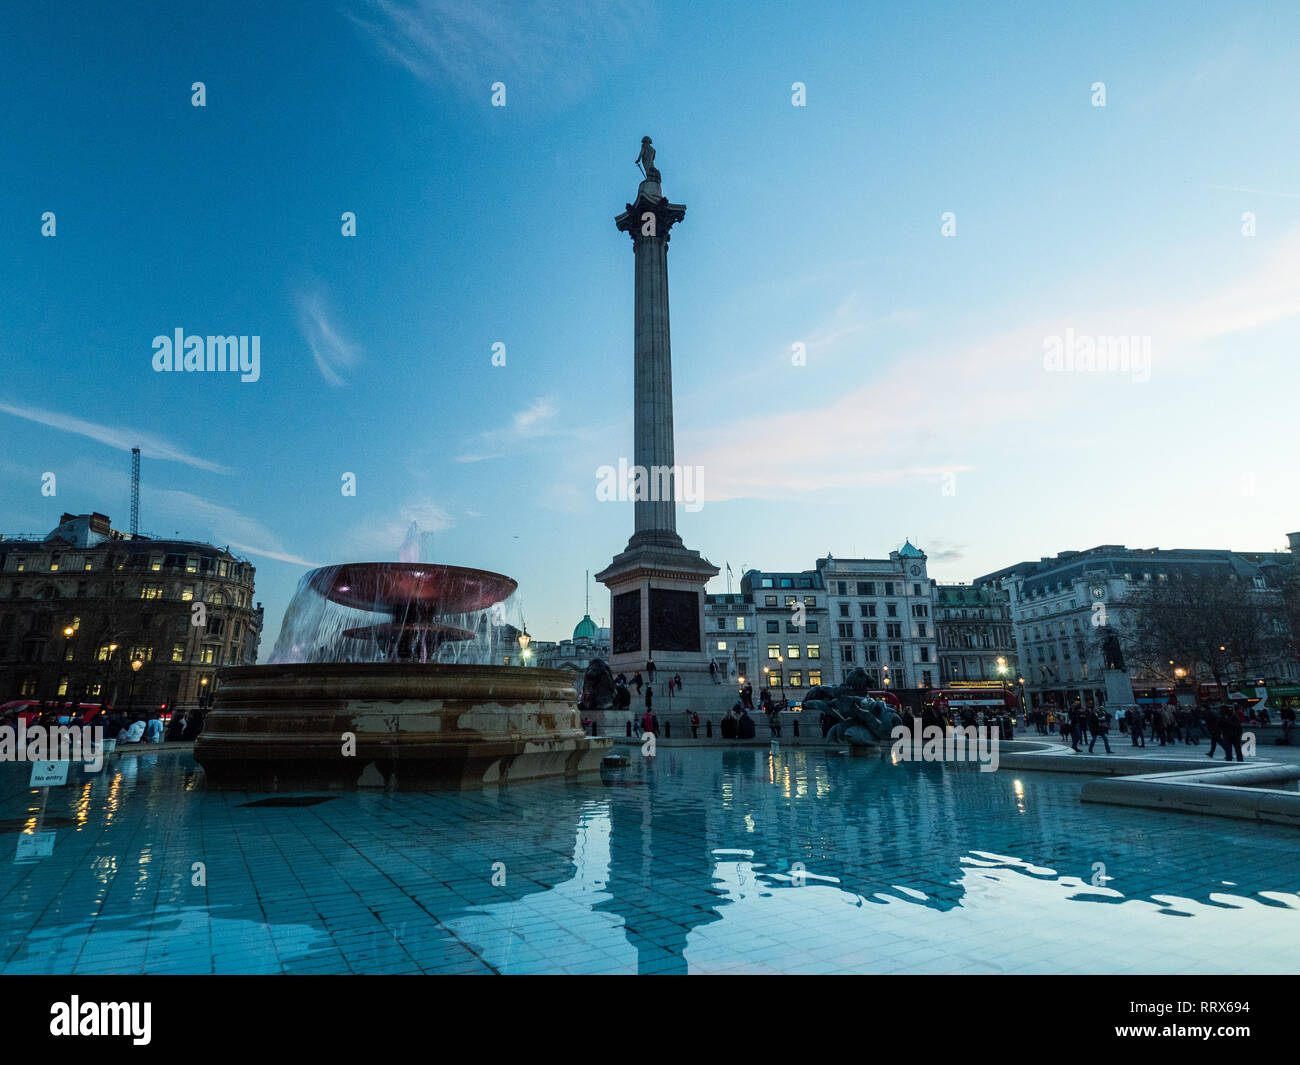 Fuente & Nelsons Column en Trafalgar Square, Londres, Inglaterra. Foto de stock